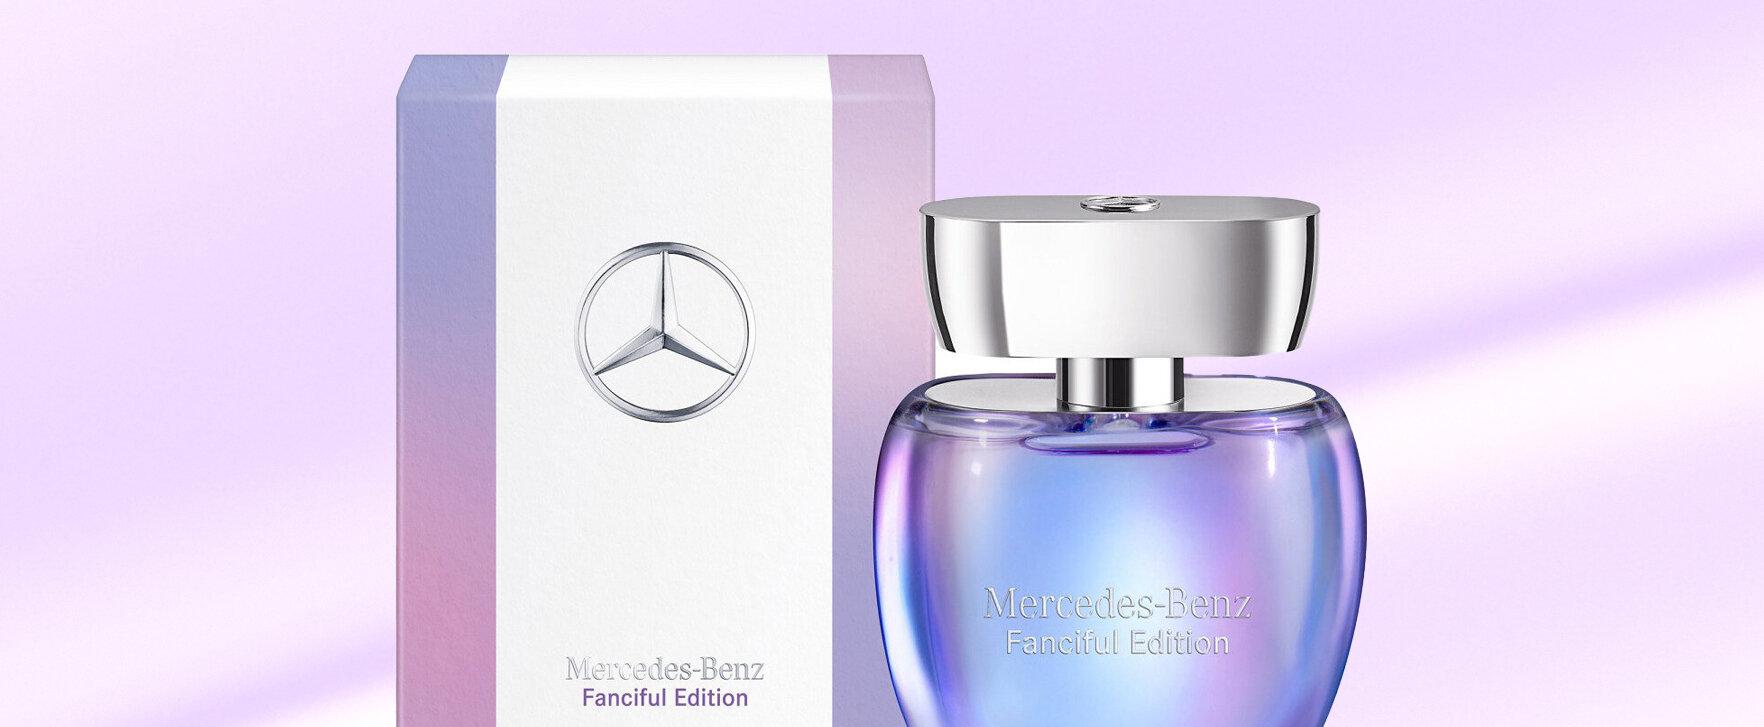 Eine Ode an den Glamour: Die neue limitierte „Mercedes-Benz Fanciful Edition“﻿